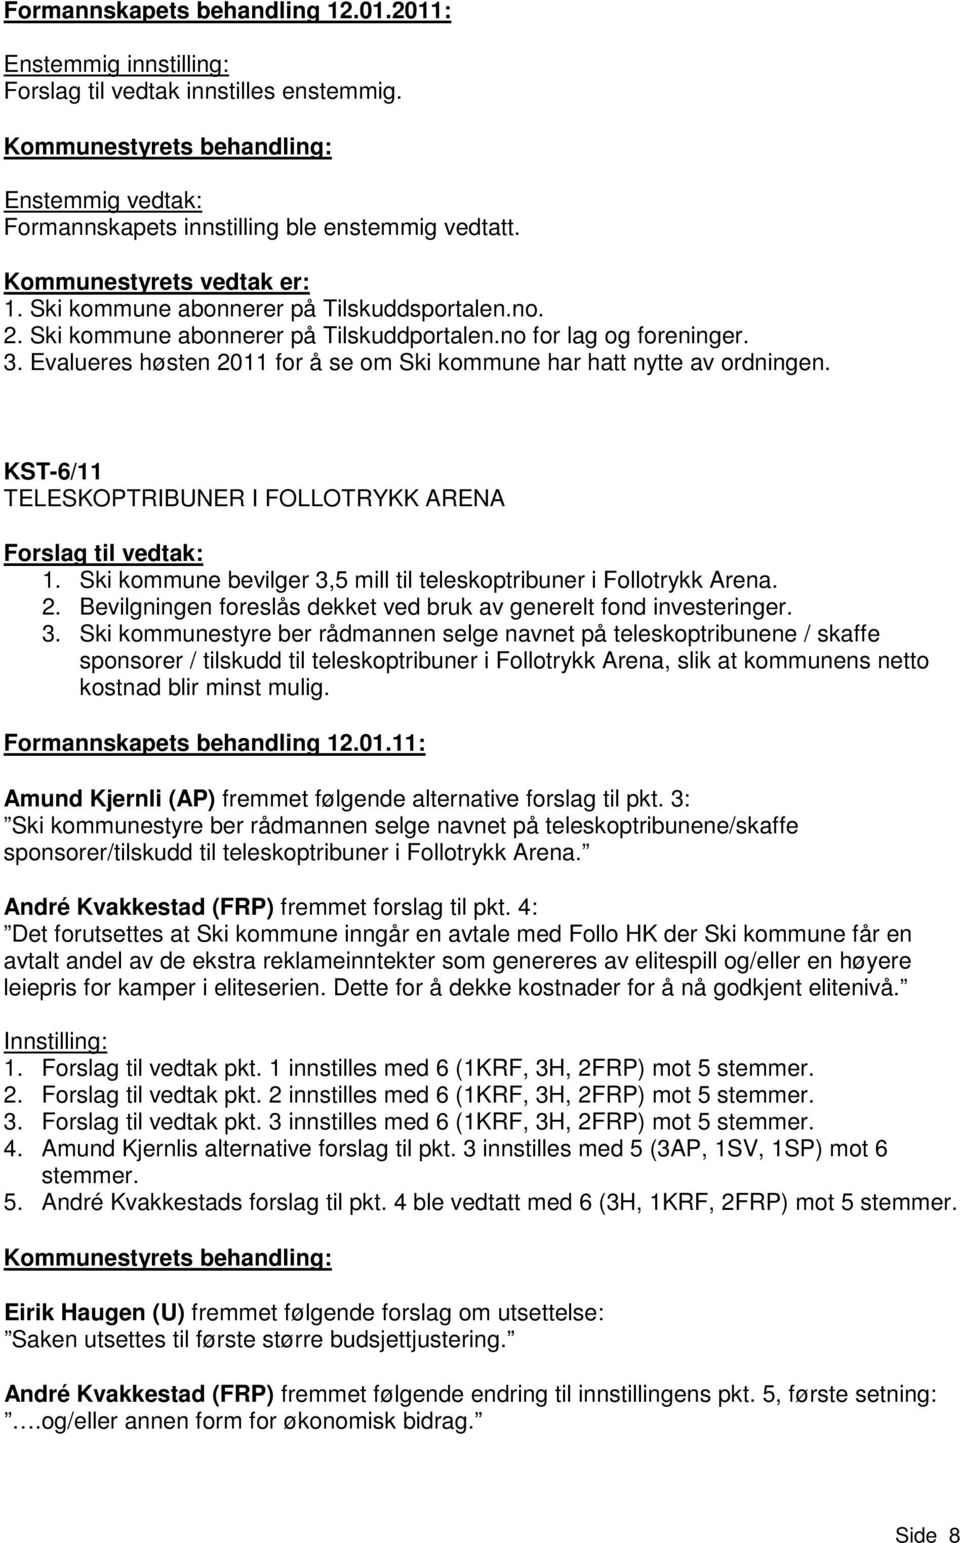 KST-6/11 TELESKOPTRIBUNER I FOLLOTRYKK ARENA Forslag til vedtak: 1. Ski kommune bevilger 3,5 mill til teleskoptribuner i Follotrykk Arena. 2.